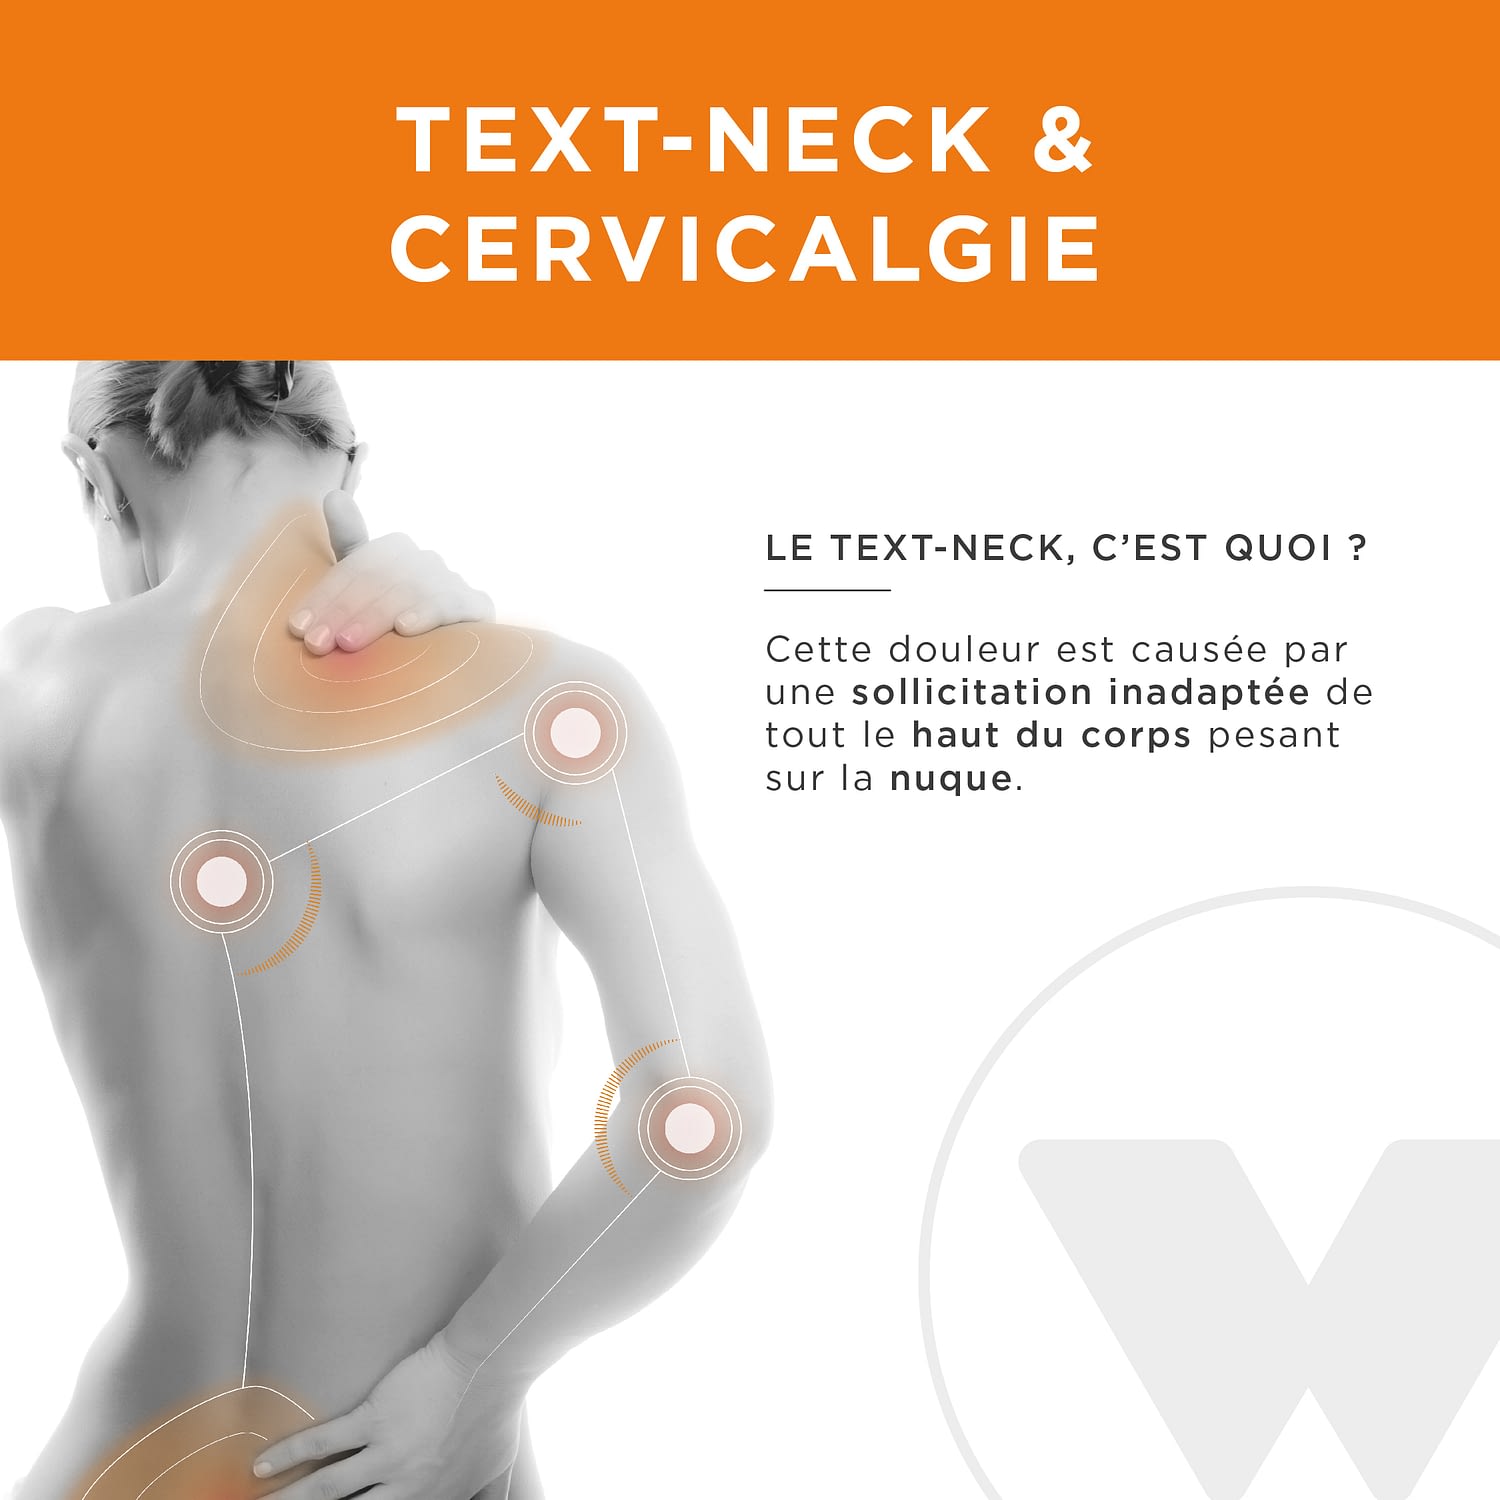 Cervicalgies text-neck